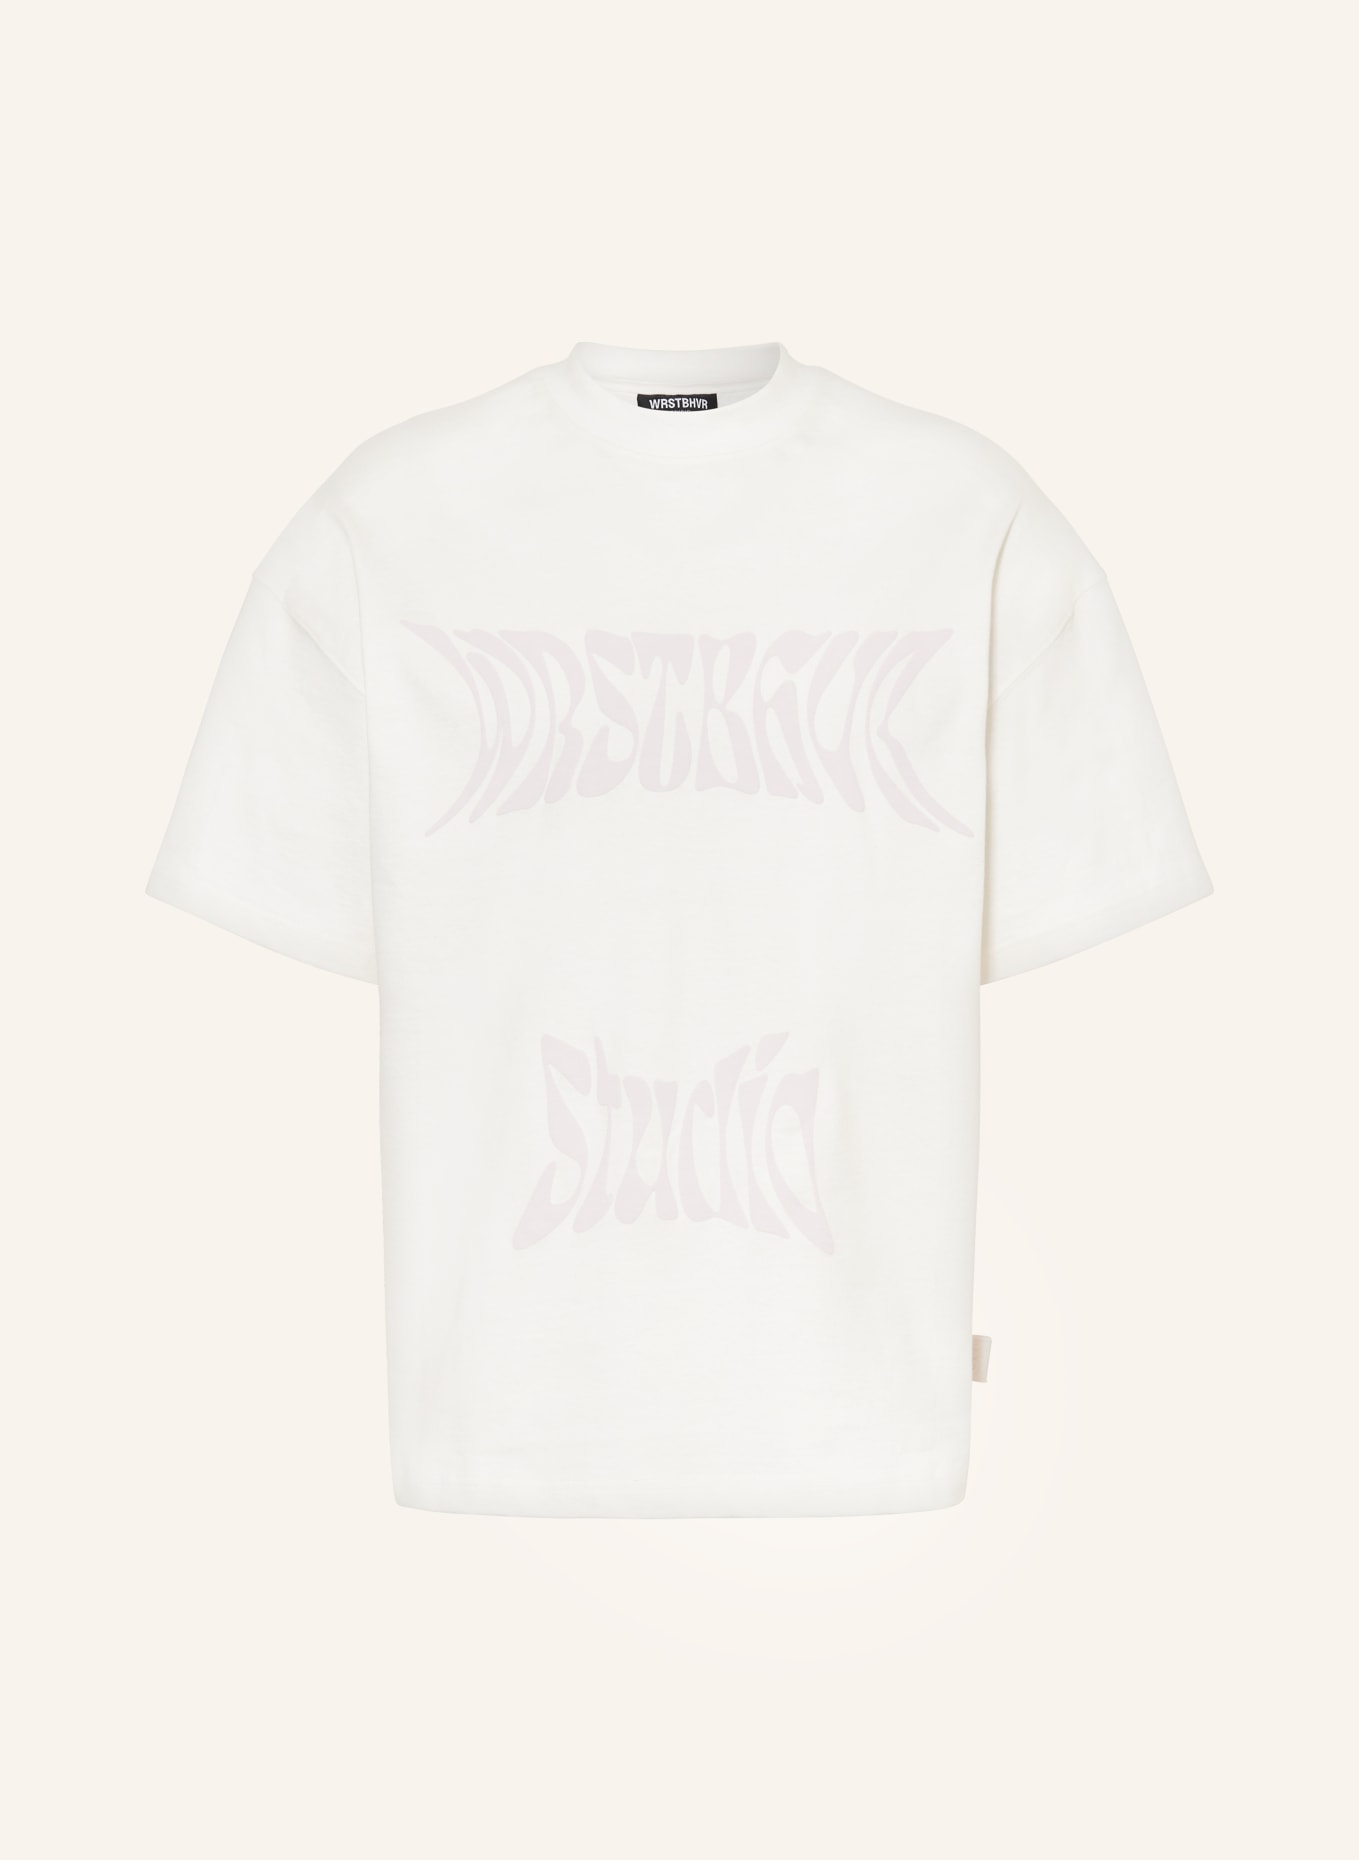 WRSTBHVR T-shirt OZZY, Color: WHITE (Image 1)